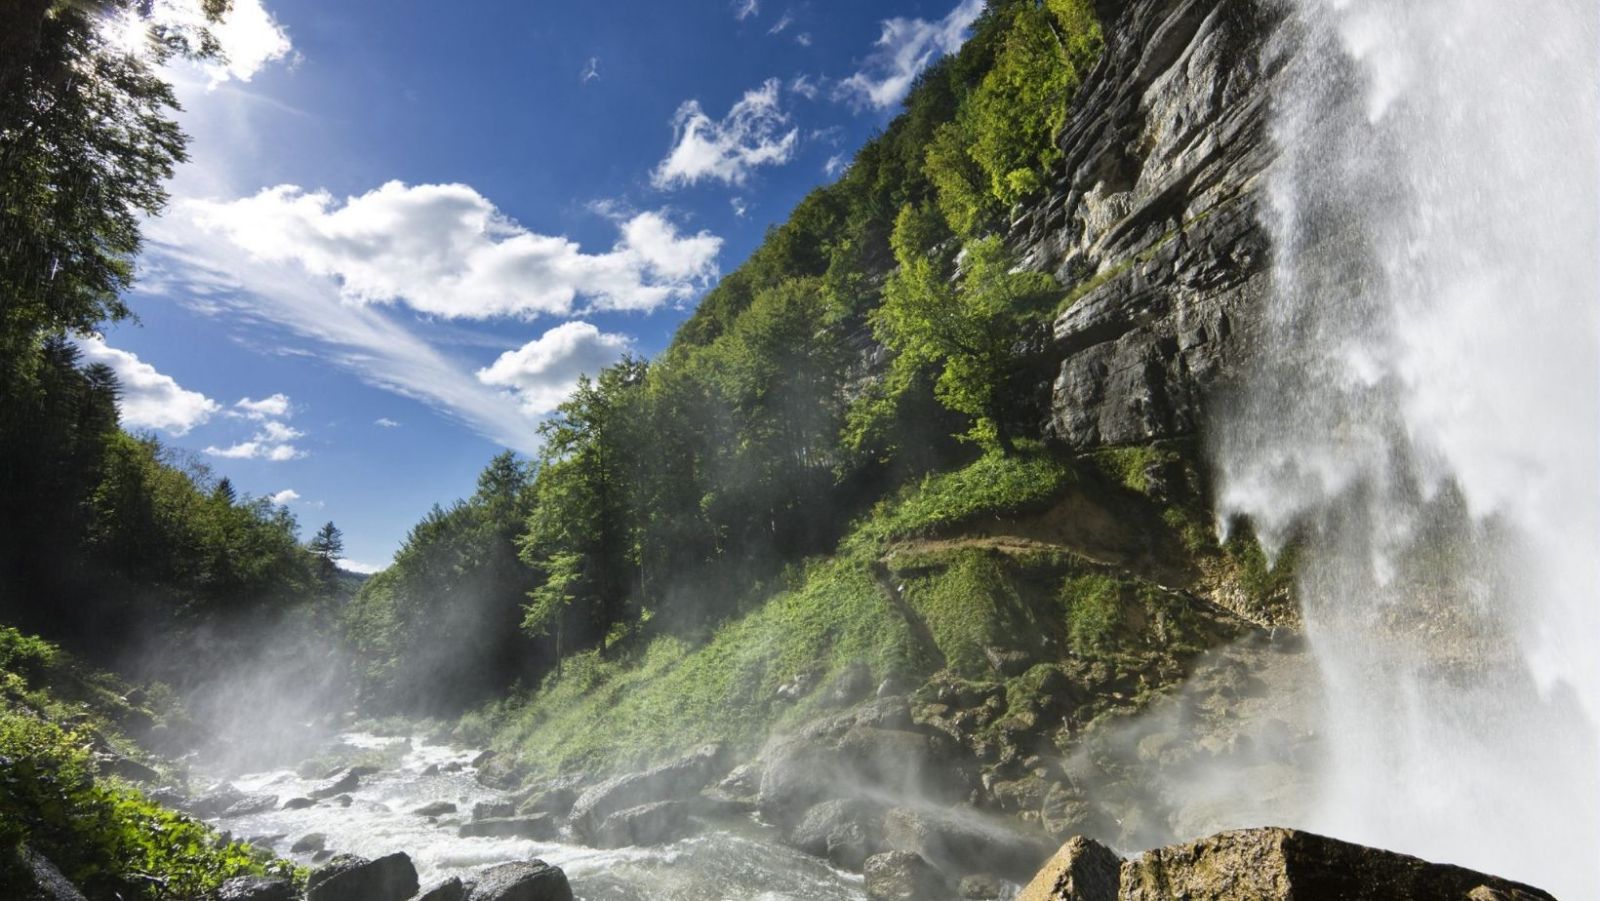 100 000 visiteurs séduits chaque année par la beauté sauvage cette cascade